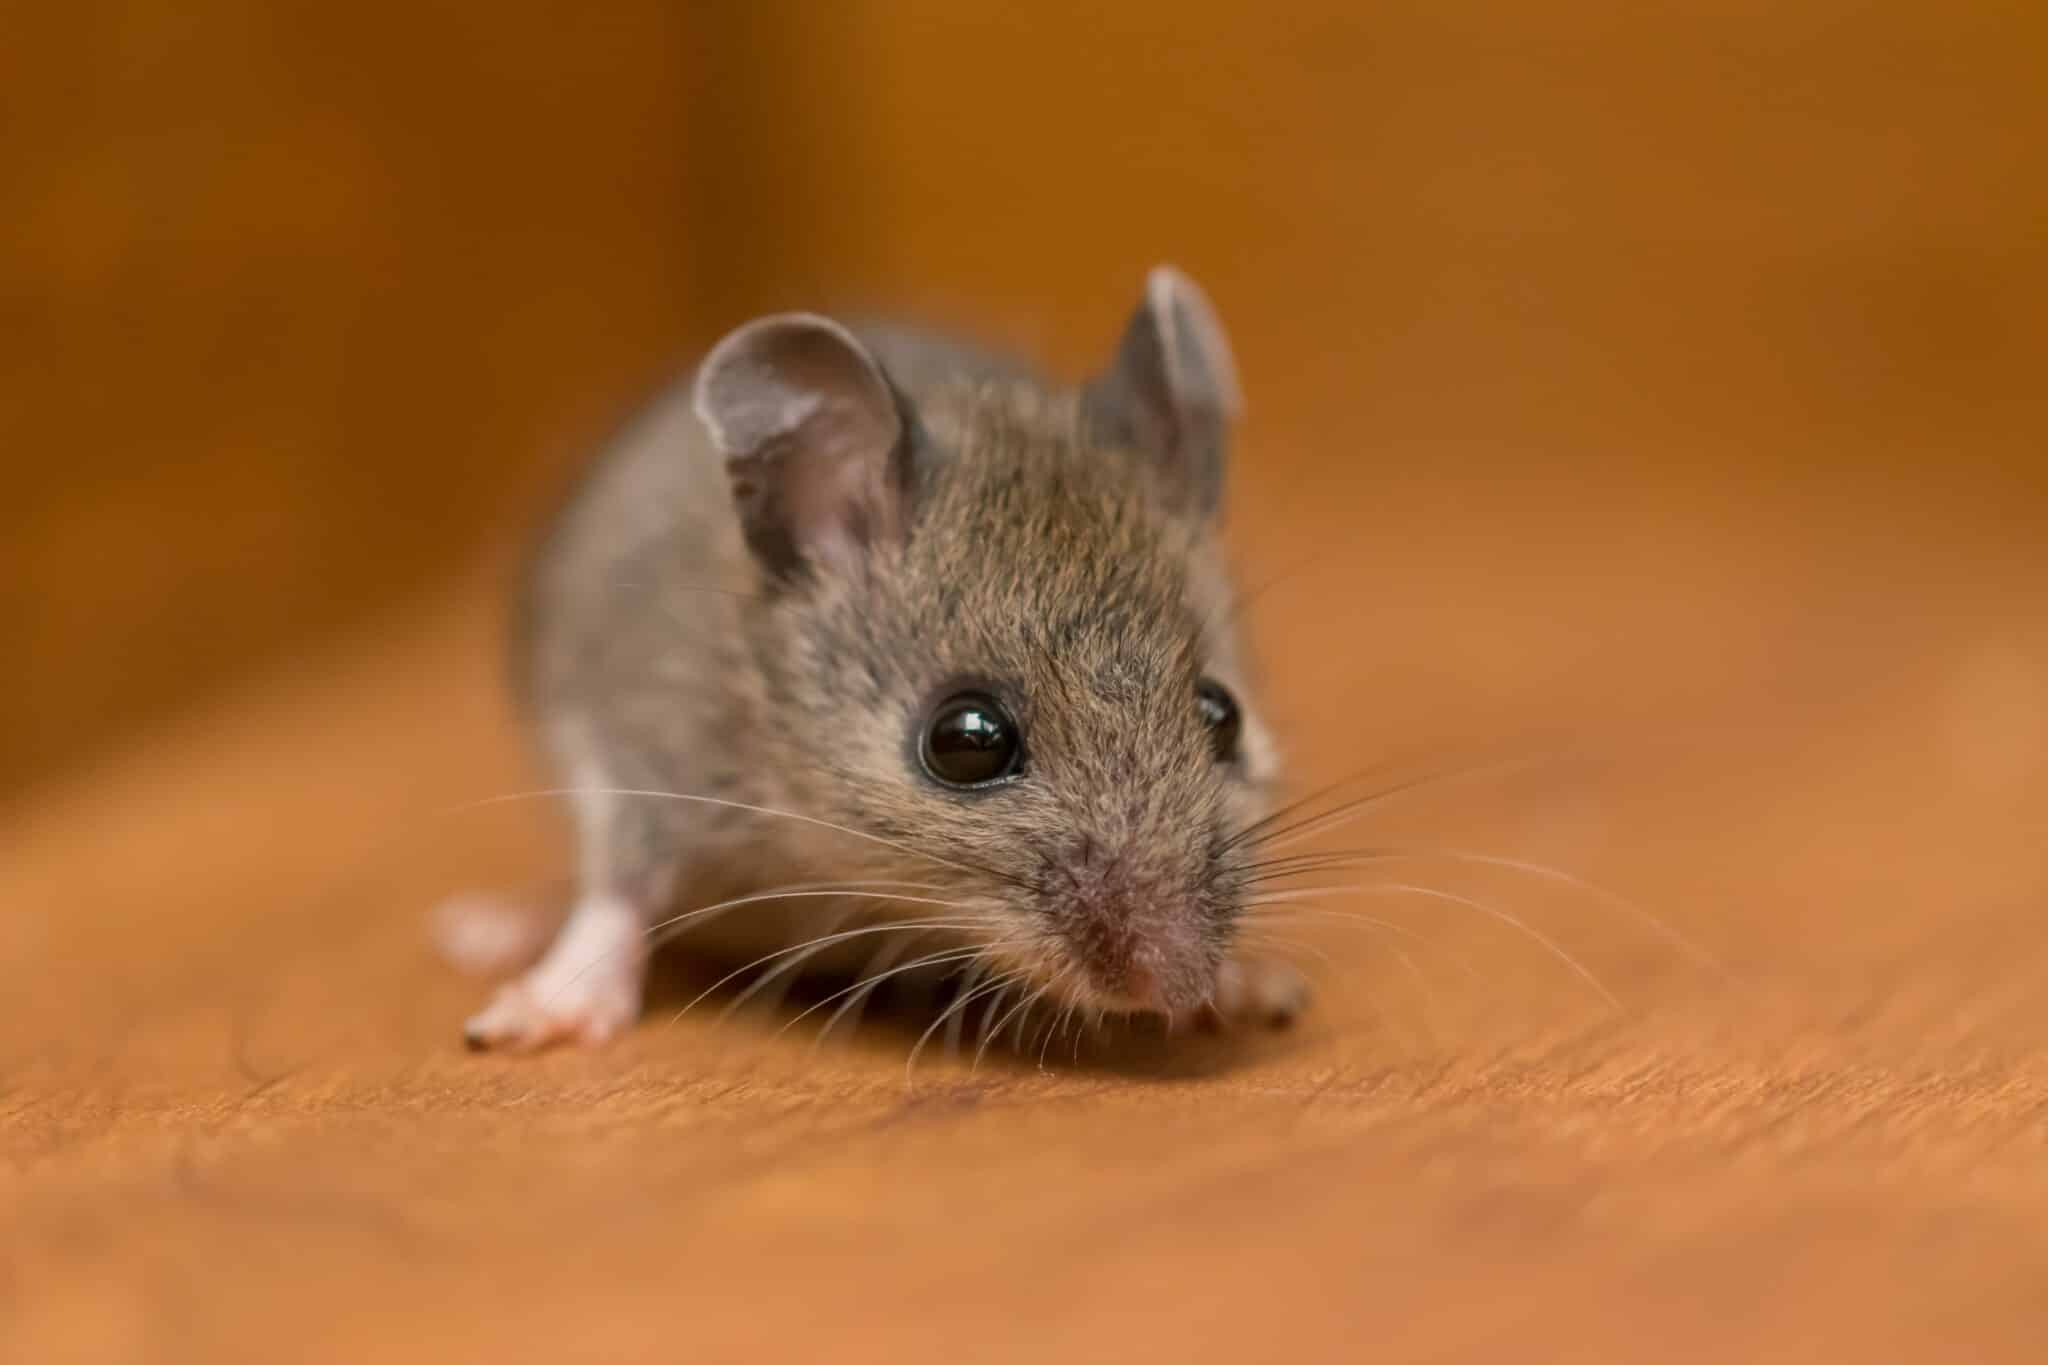 Mice Pest Control